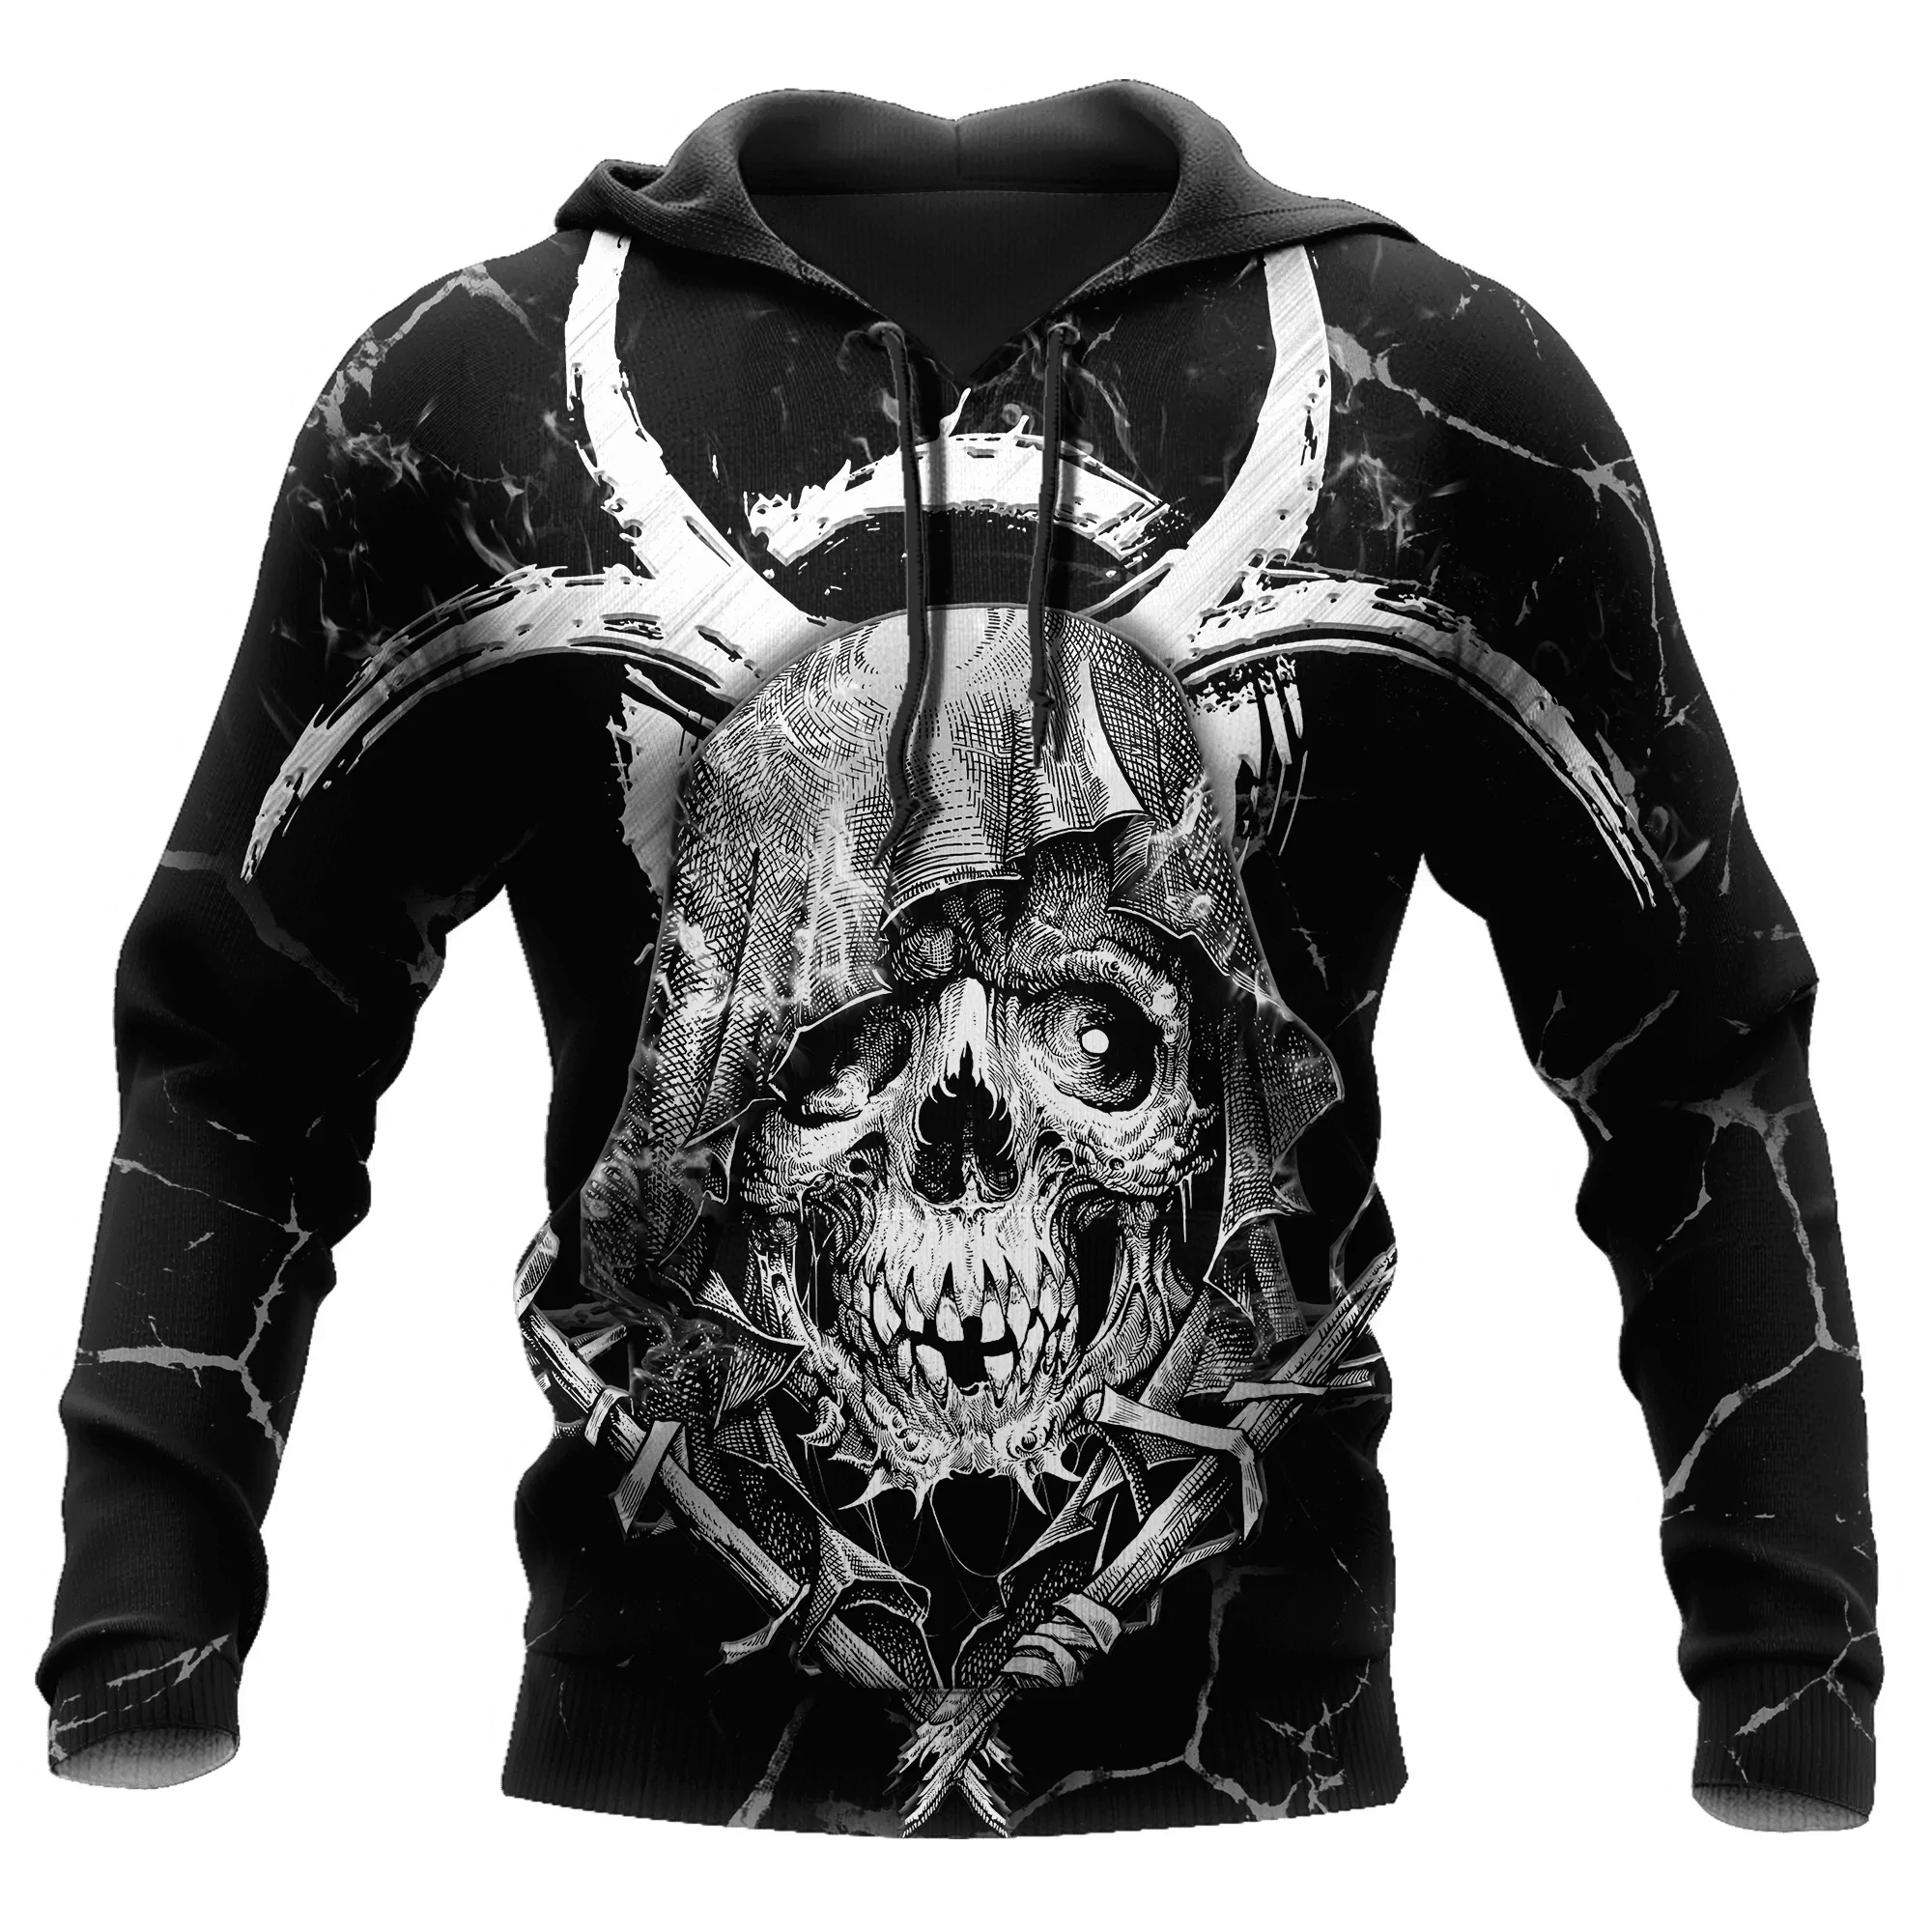 Grim Reaper Skull All Over Printed Unisex Hoodie 3D Full Printed Skull Hoodies